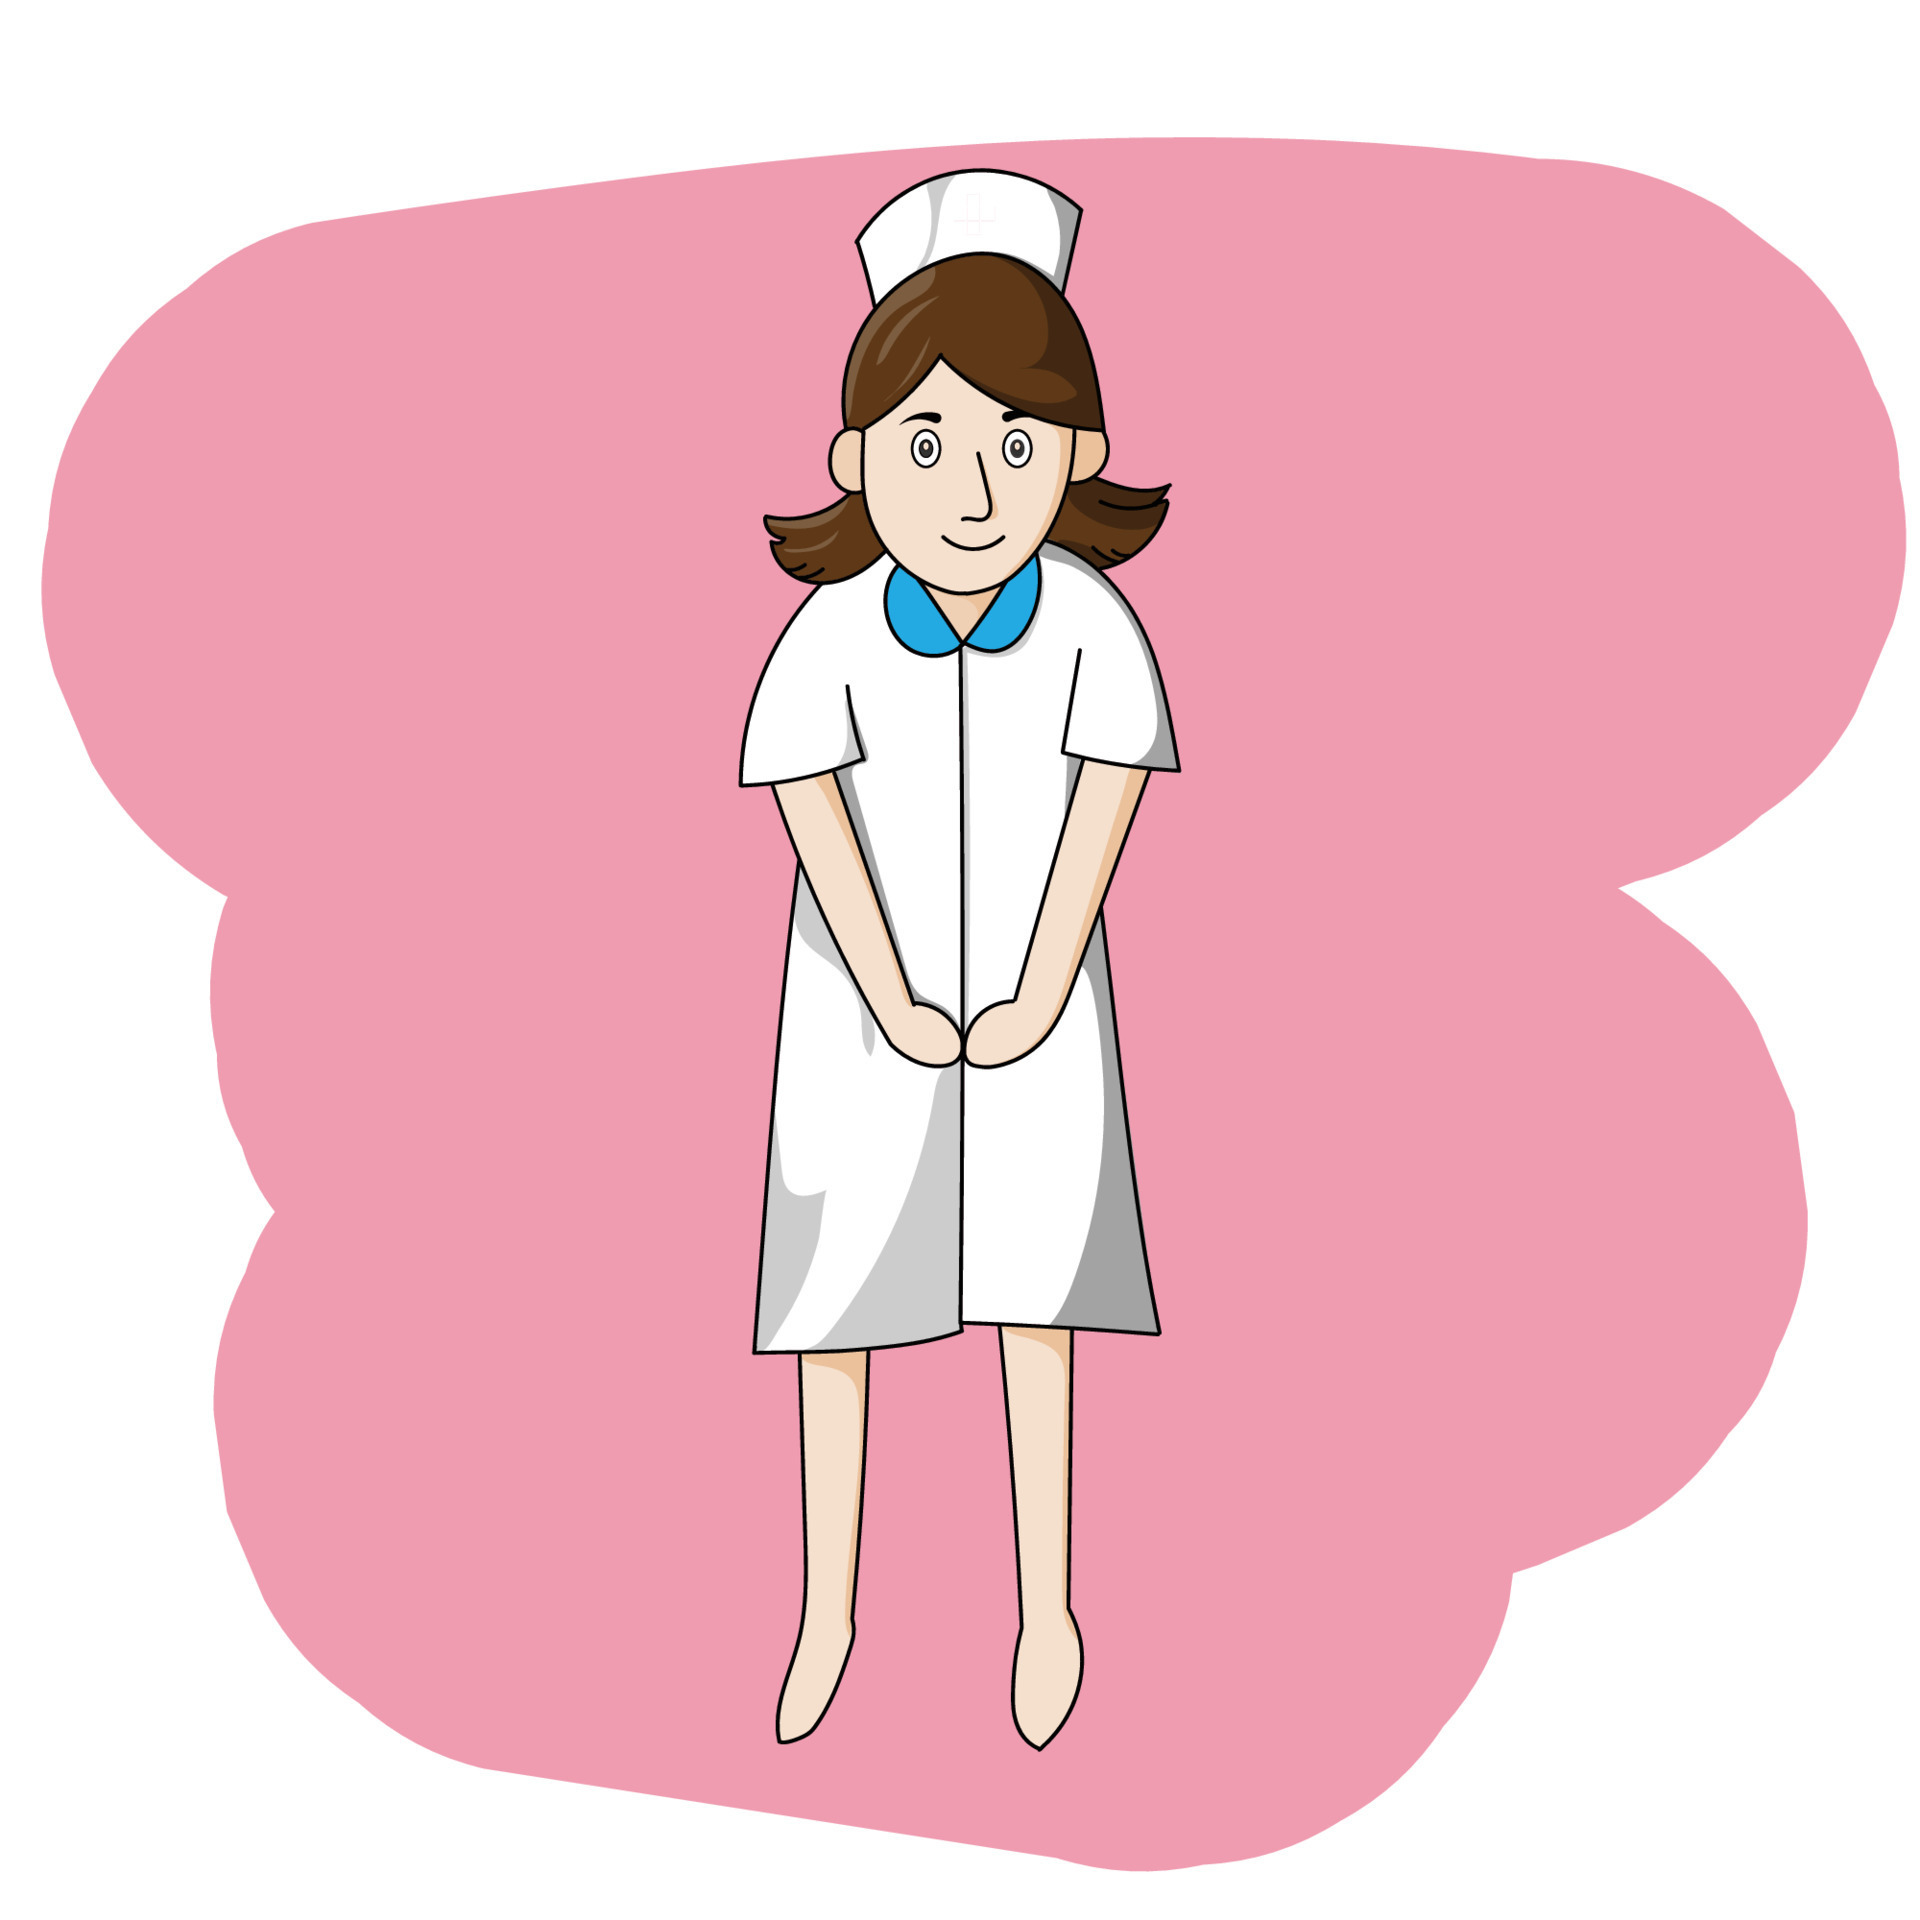 desenho de uma enfermeira 5520084 Vetor no Vecteezy